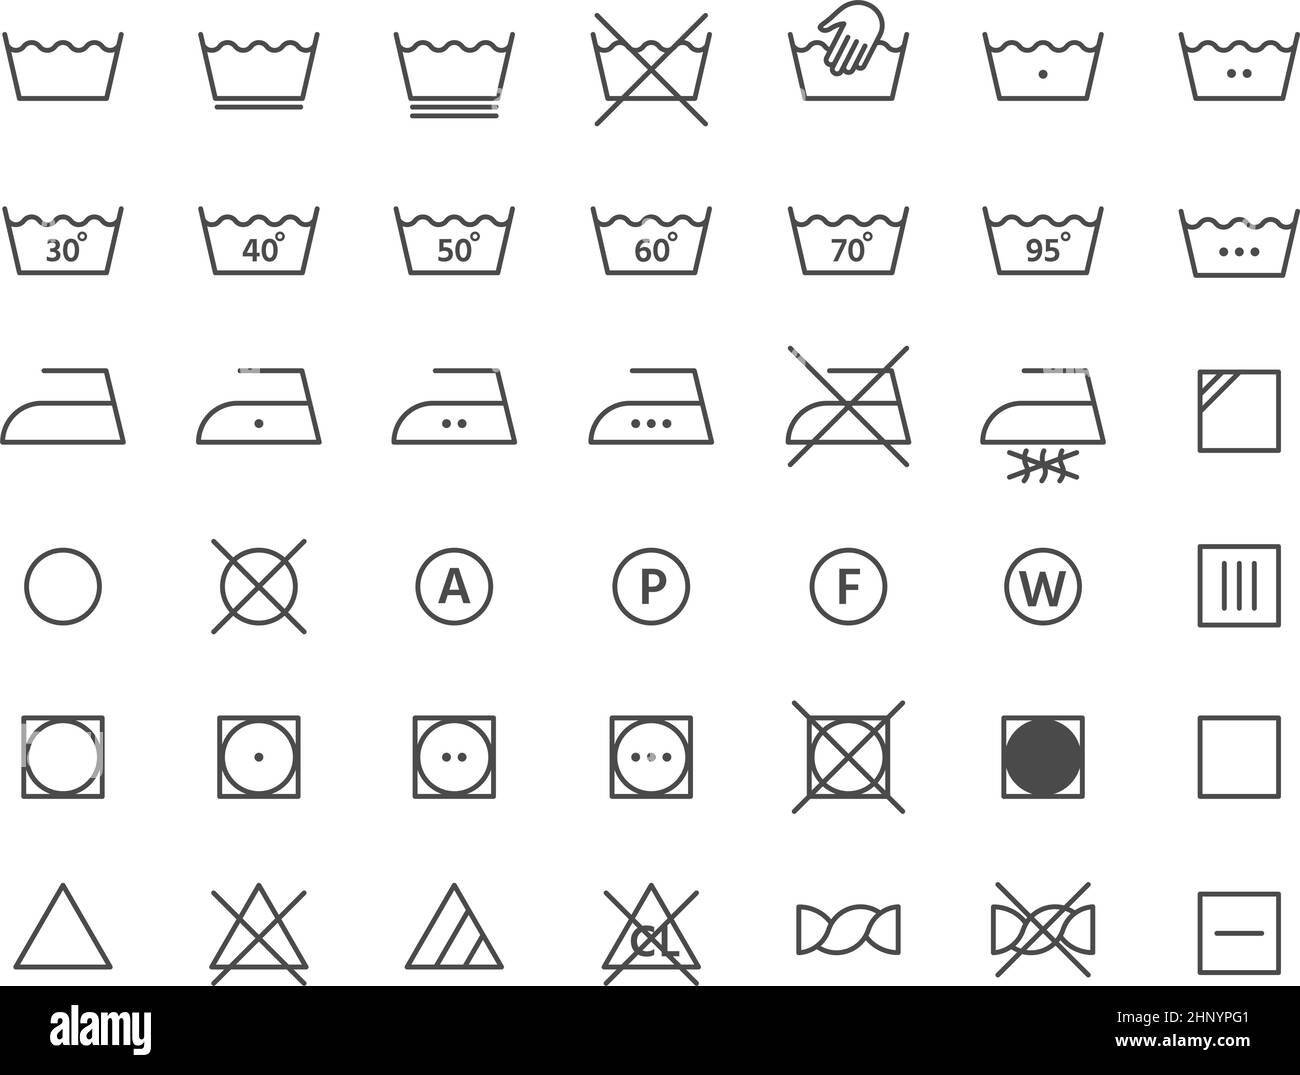 Symbole für die Wäschelabel-Anweisungszeile für Wäschestücke. Händewaschen, Trocknen, Temperatur und Bügeln. Symbolvektor für Textilreinigung. Illustrati Stock Vektor